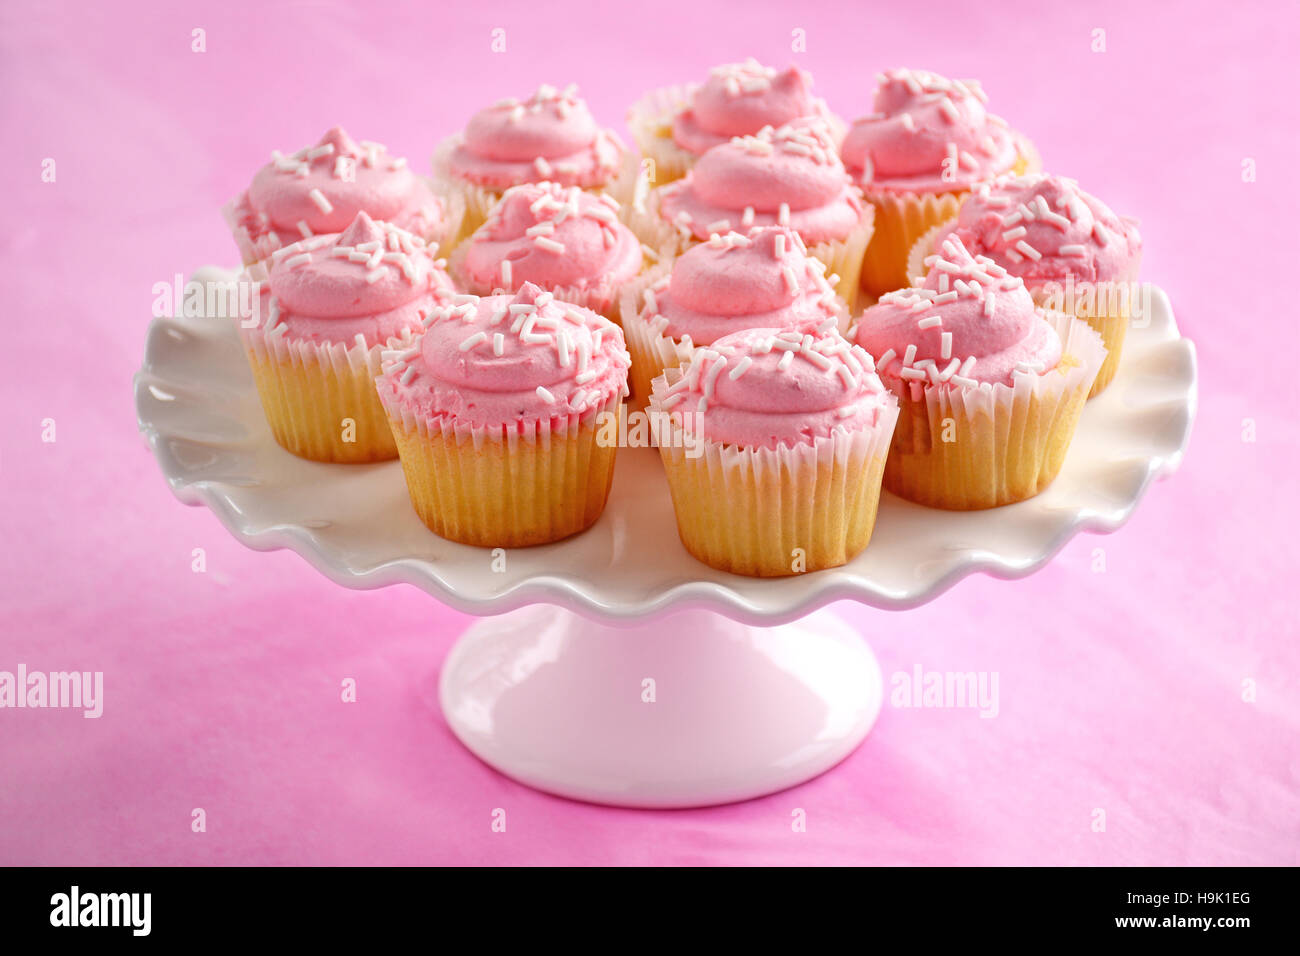 Zarte süße Mini Erdbeer Muffins auf weißen Sockel Kuchen stehen auf rosa Hintergrund im Querformat.  Geringe Schärfentiefe. Stockfoto